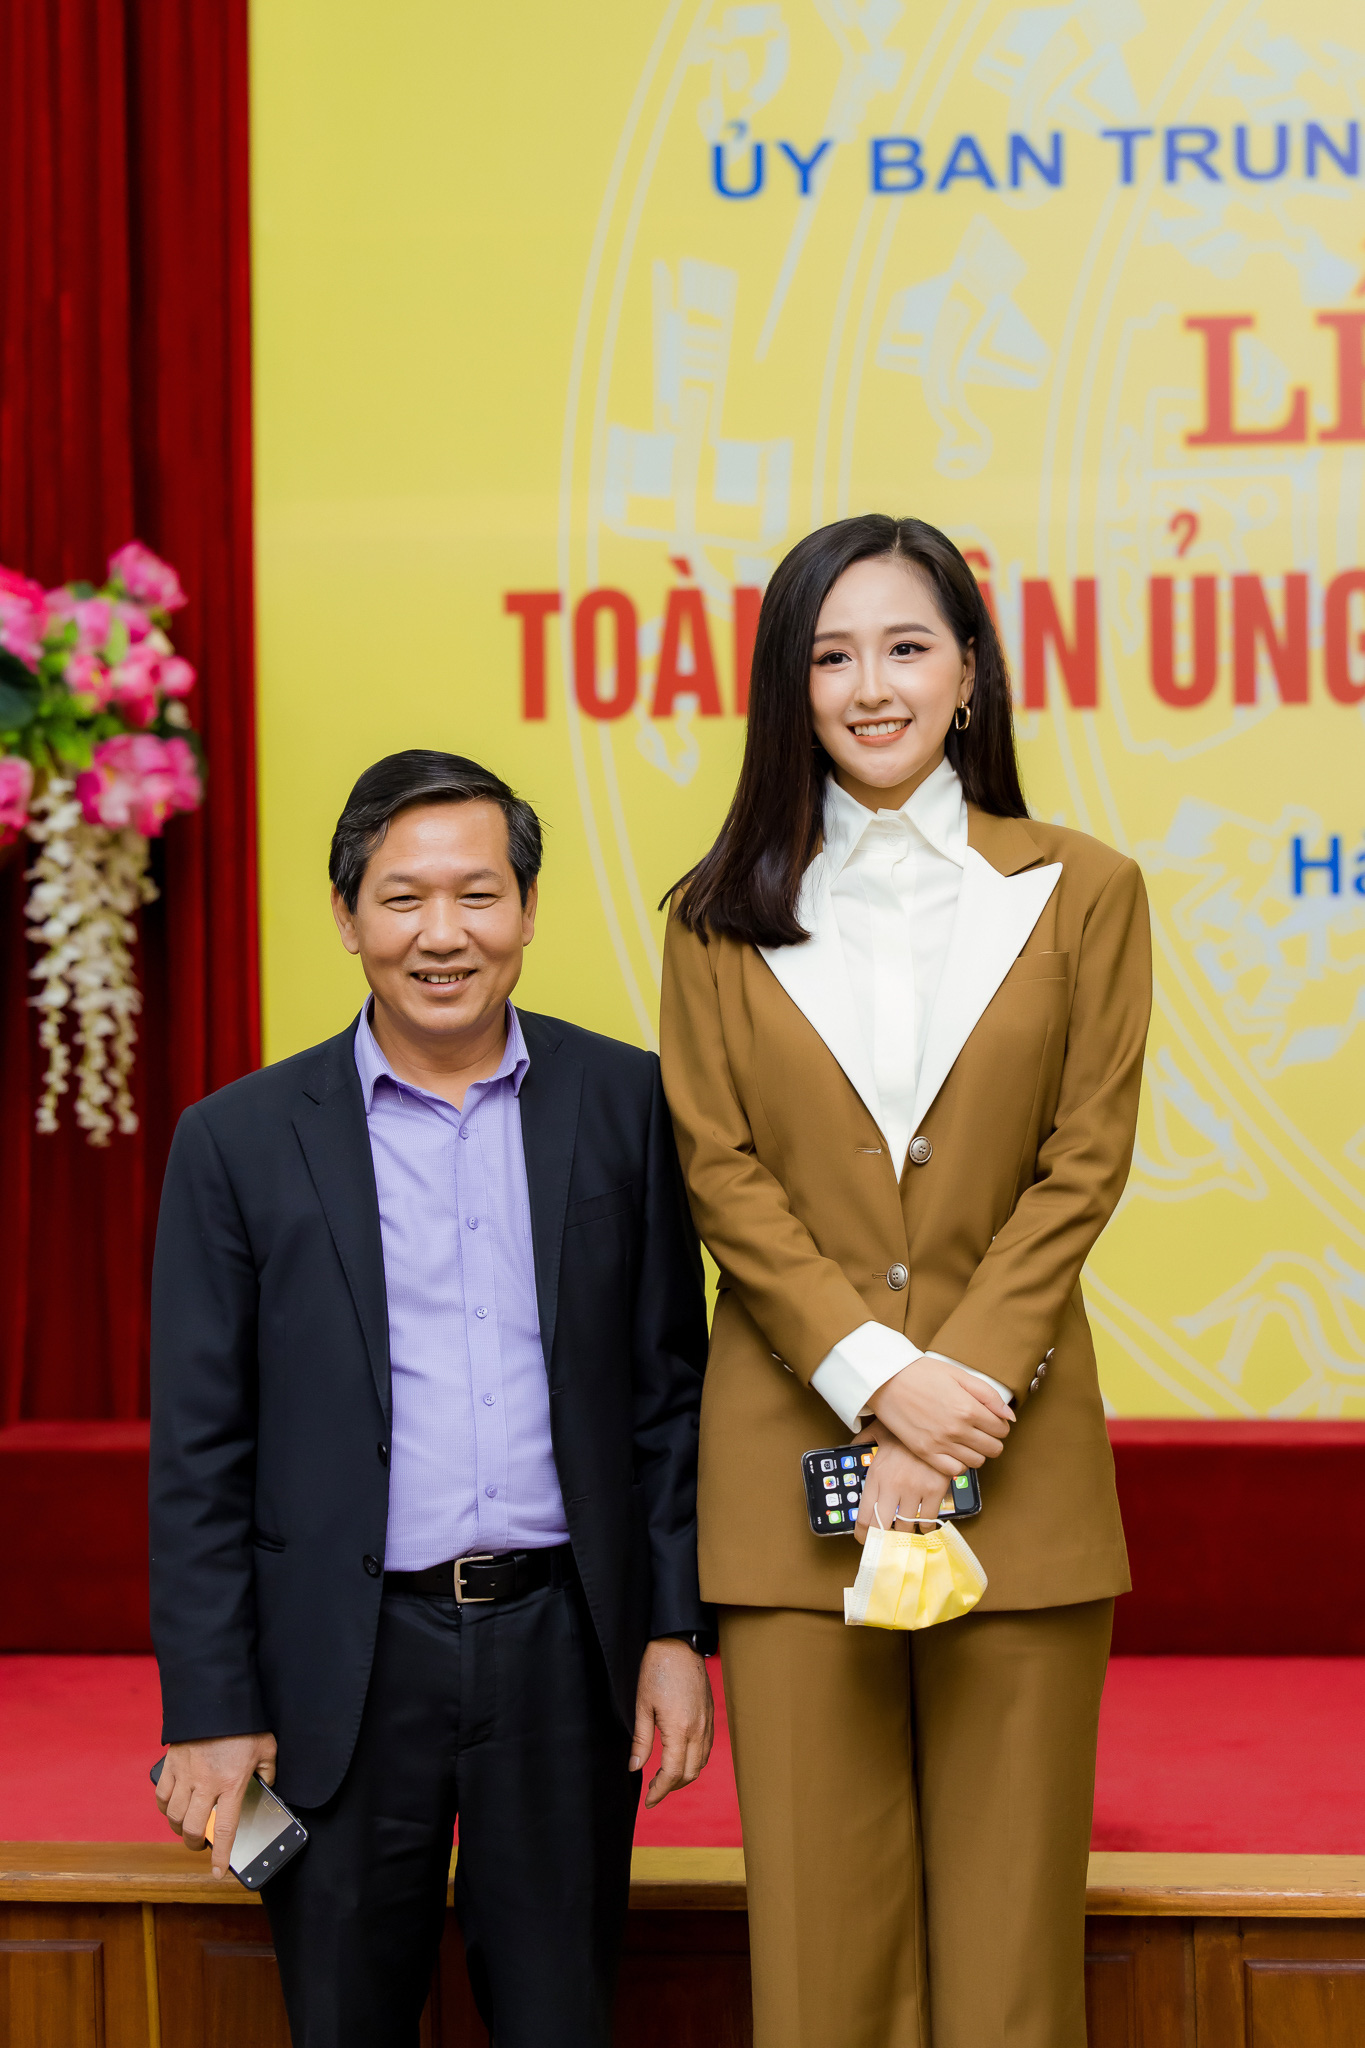 Hoa hậu Mai Phương Thuý gặp Thủ tướng Chính phủ, đại diện ủng hộ 20 tỷ đồng phòng chống đại dịch Covid-19 - Ảnh 8.